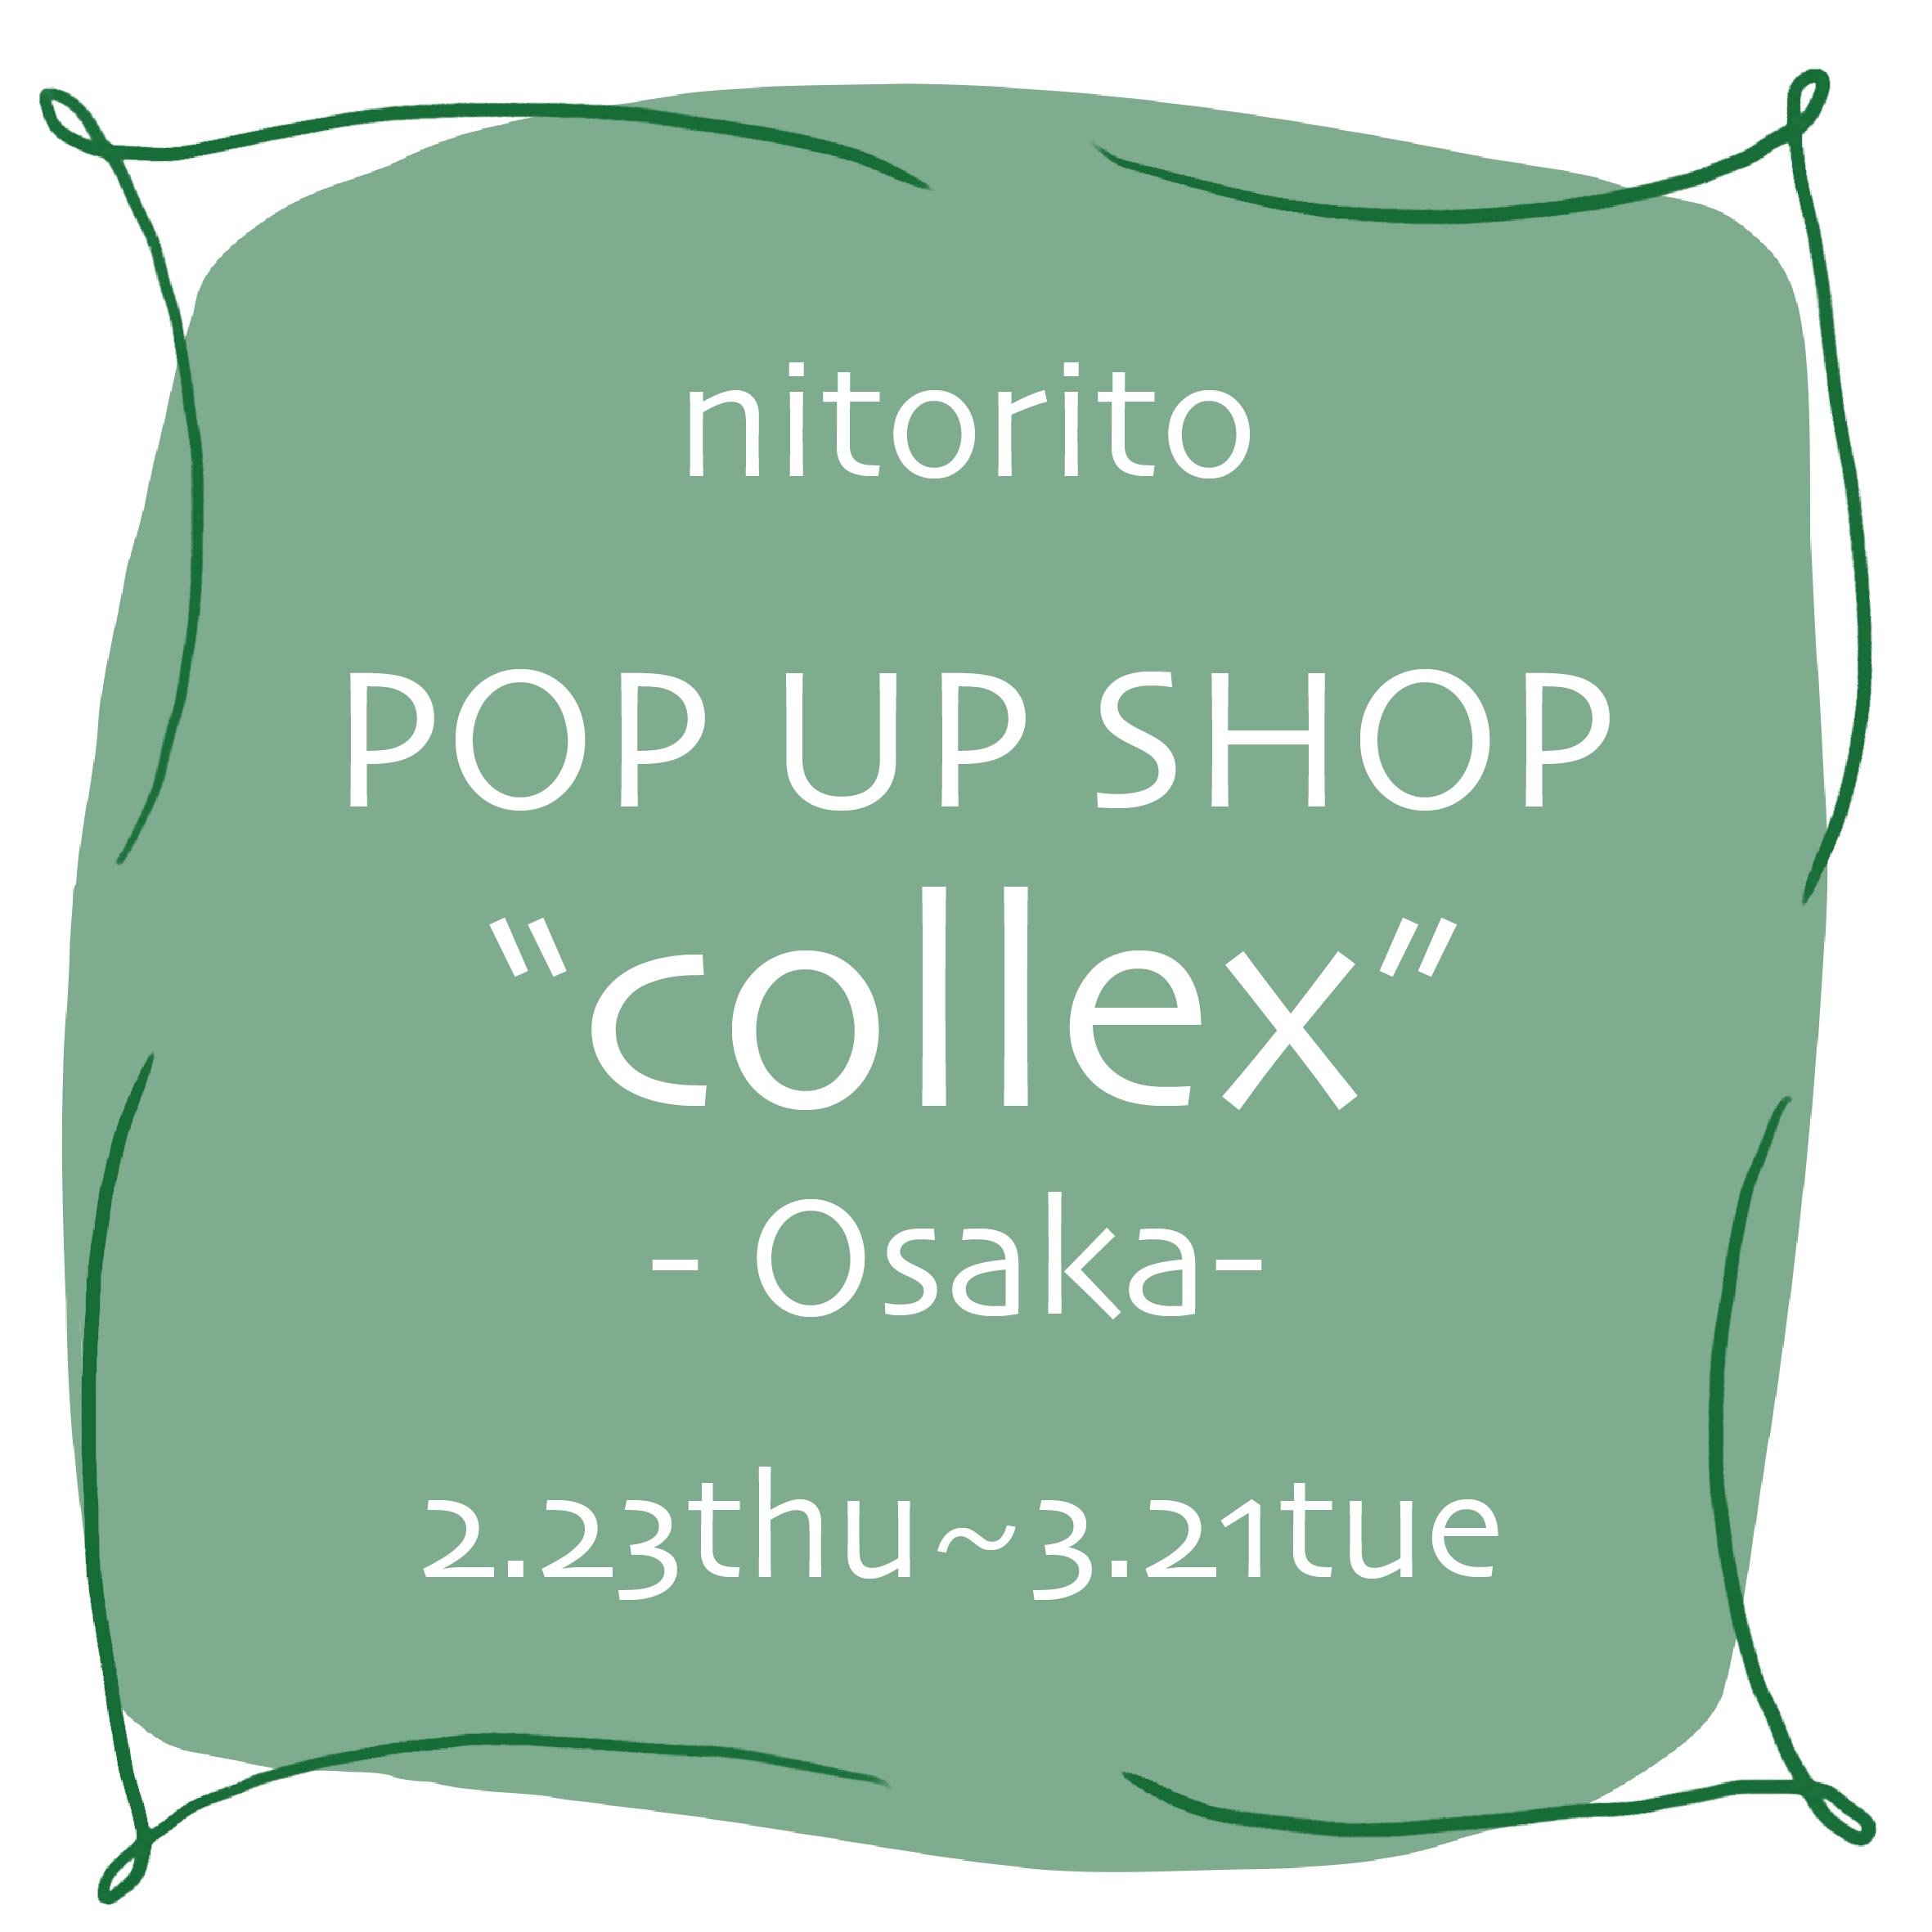 collex 大阪店にてPOPUPSHOPを行います！